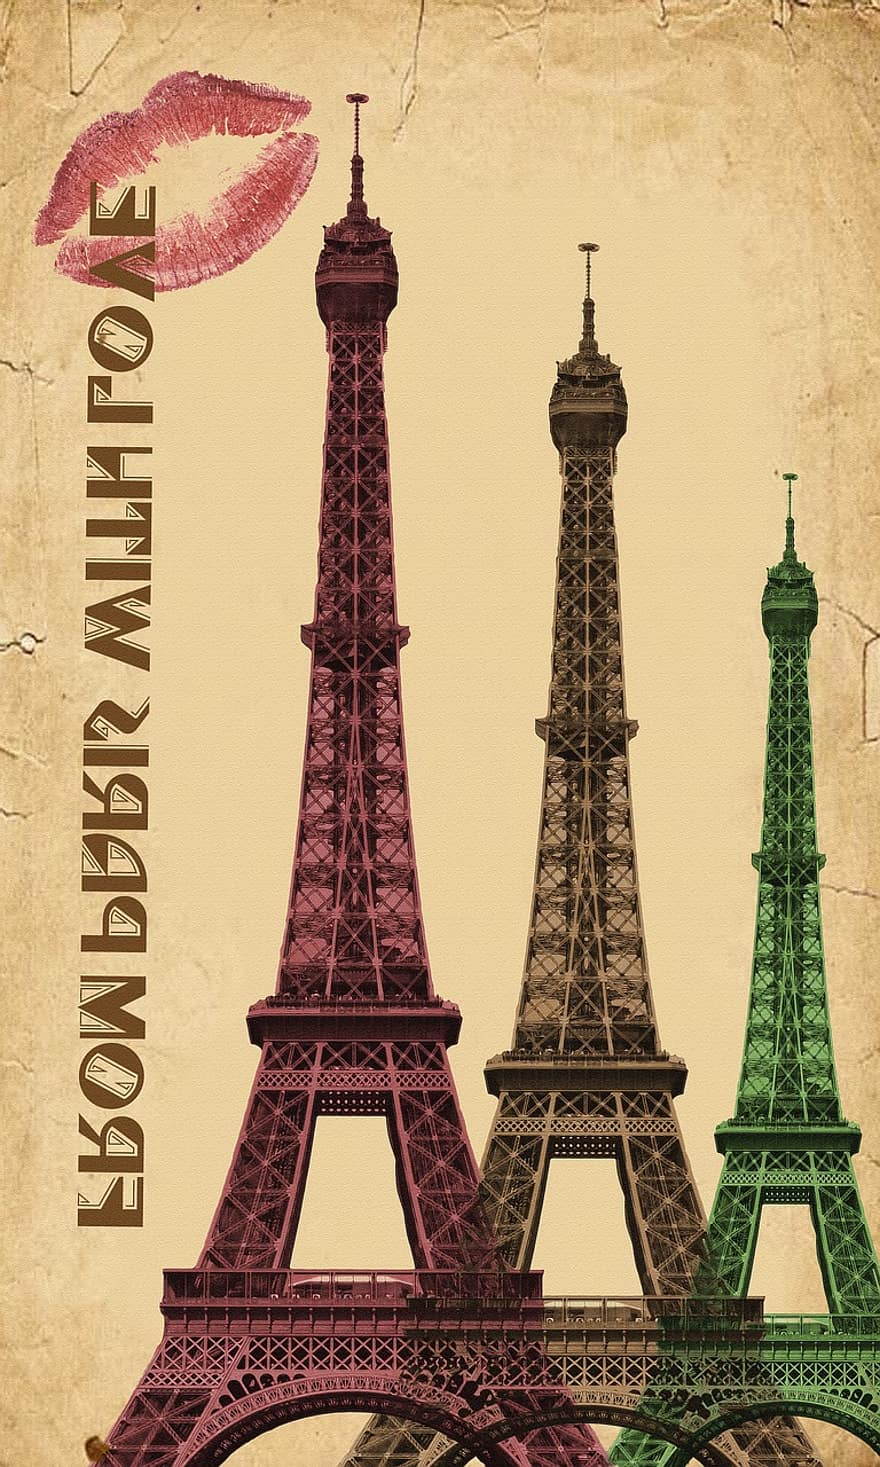 Γαλλία, Παρίσι, Παρίσι, Γαλλία, πόλη, ορόσημο, ταξίδι, Ευρώπη, αρχιτεκτονική, γαλλική γλώσσα, πύργος, περίφημος